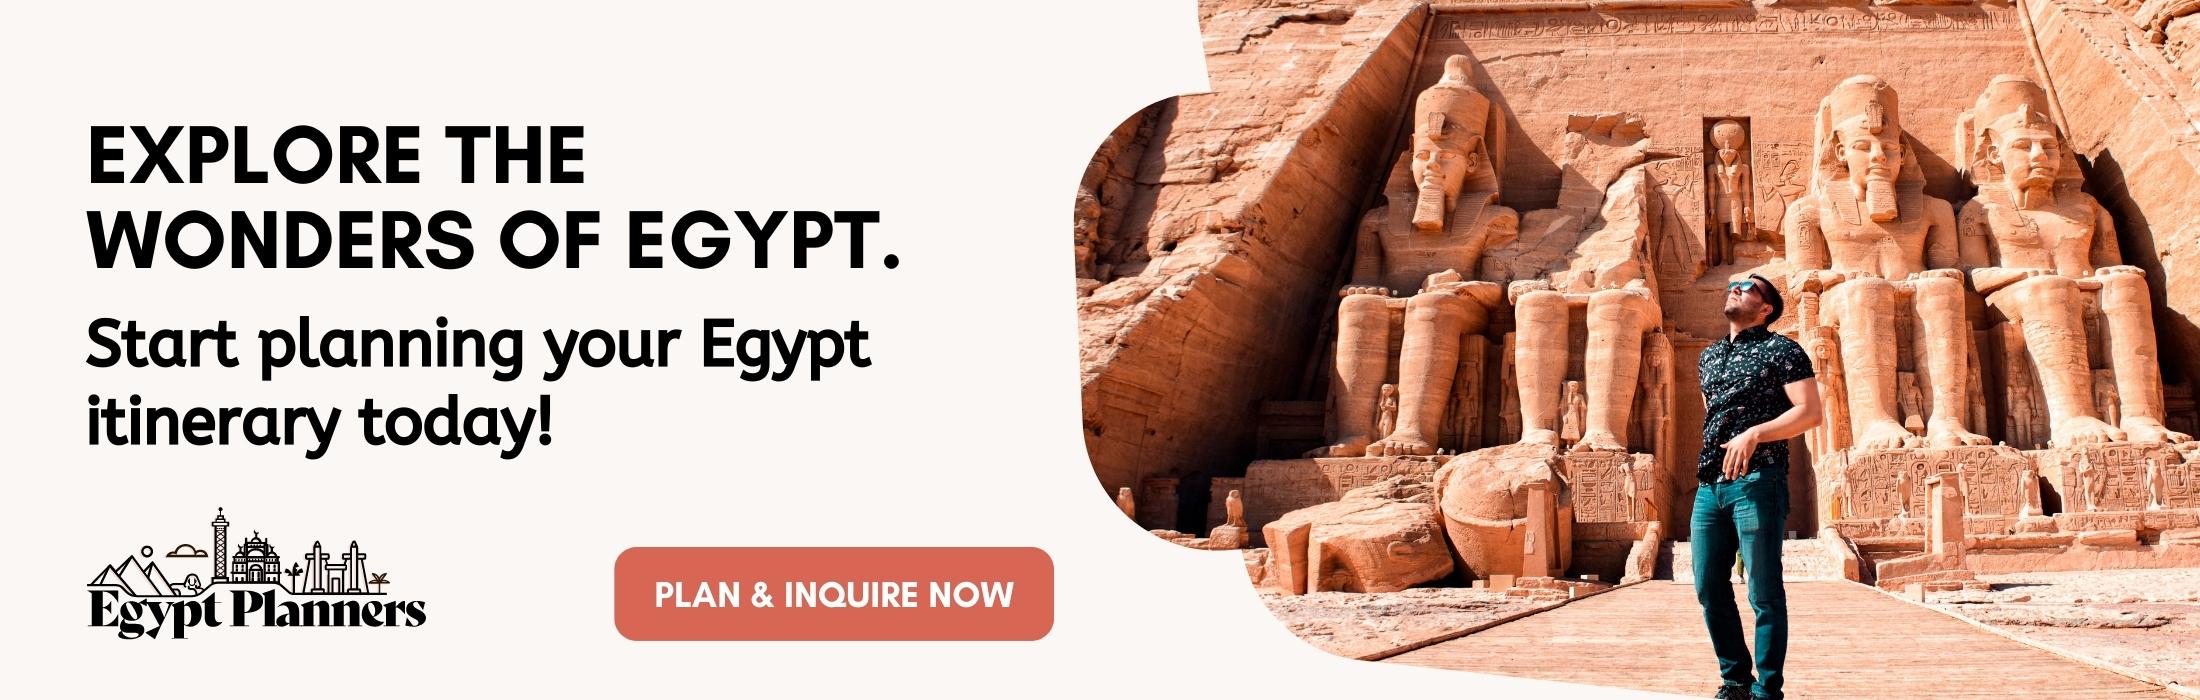 travel document for egypt